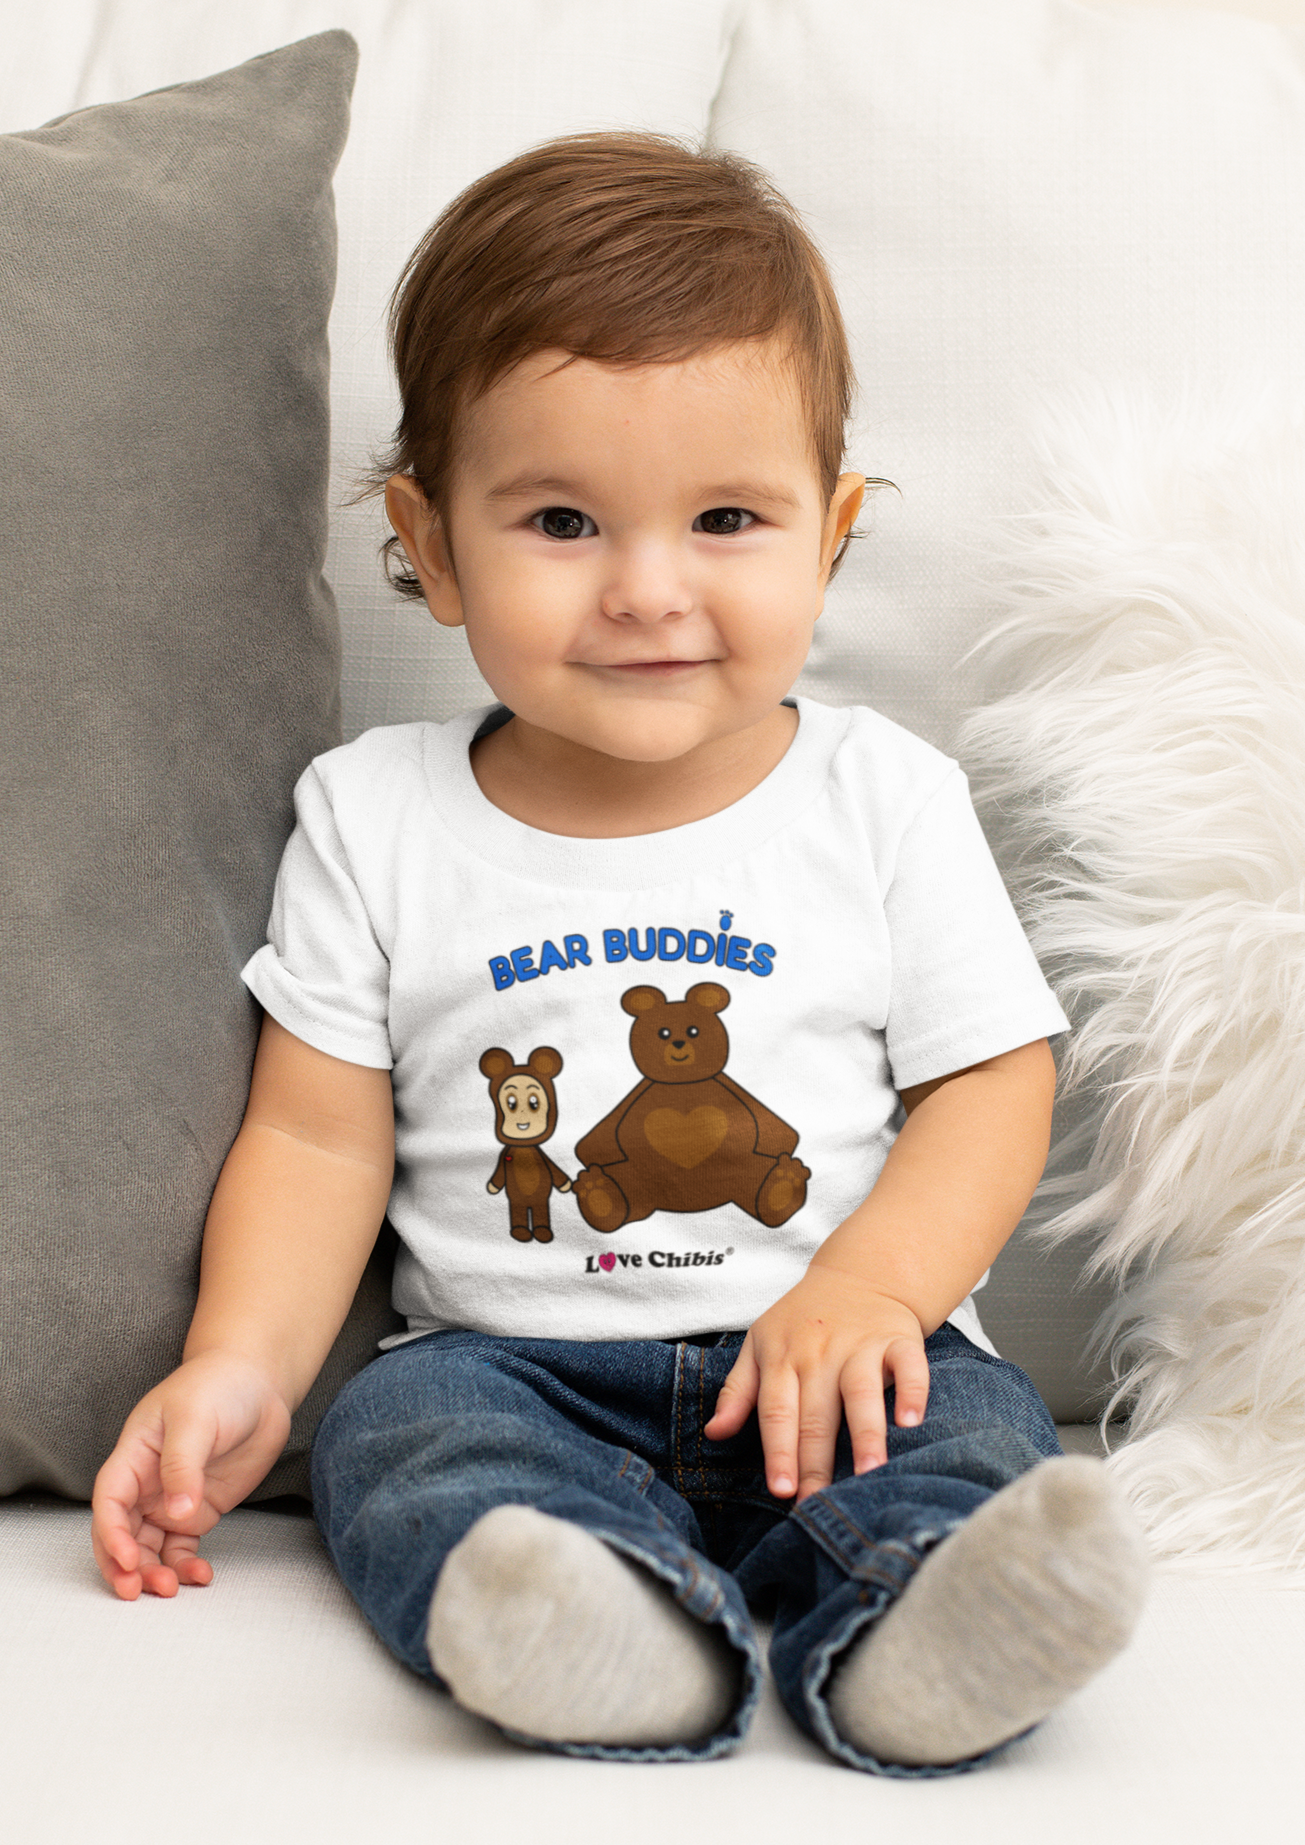 Toddler wearing a Love Chibis Bear Buddies white t-shirt